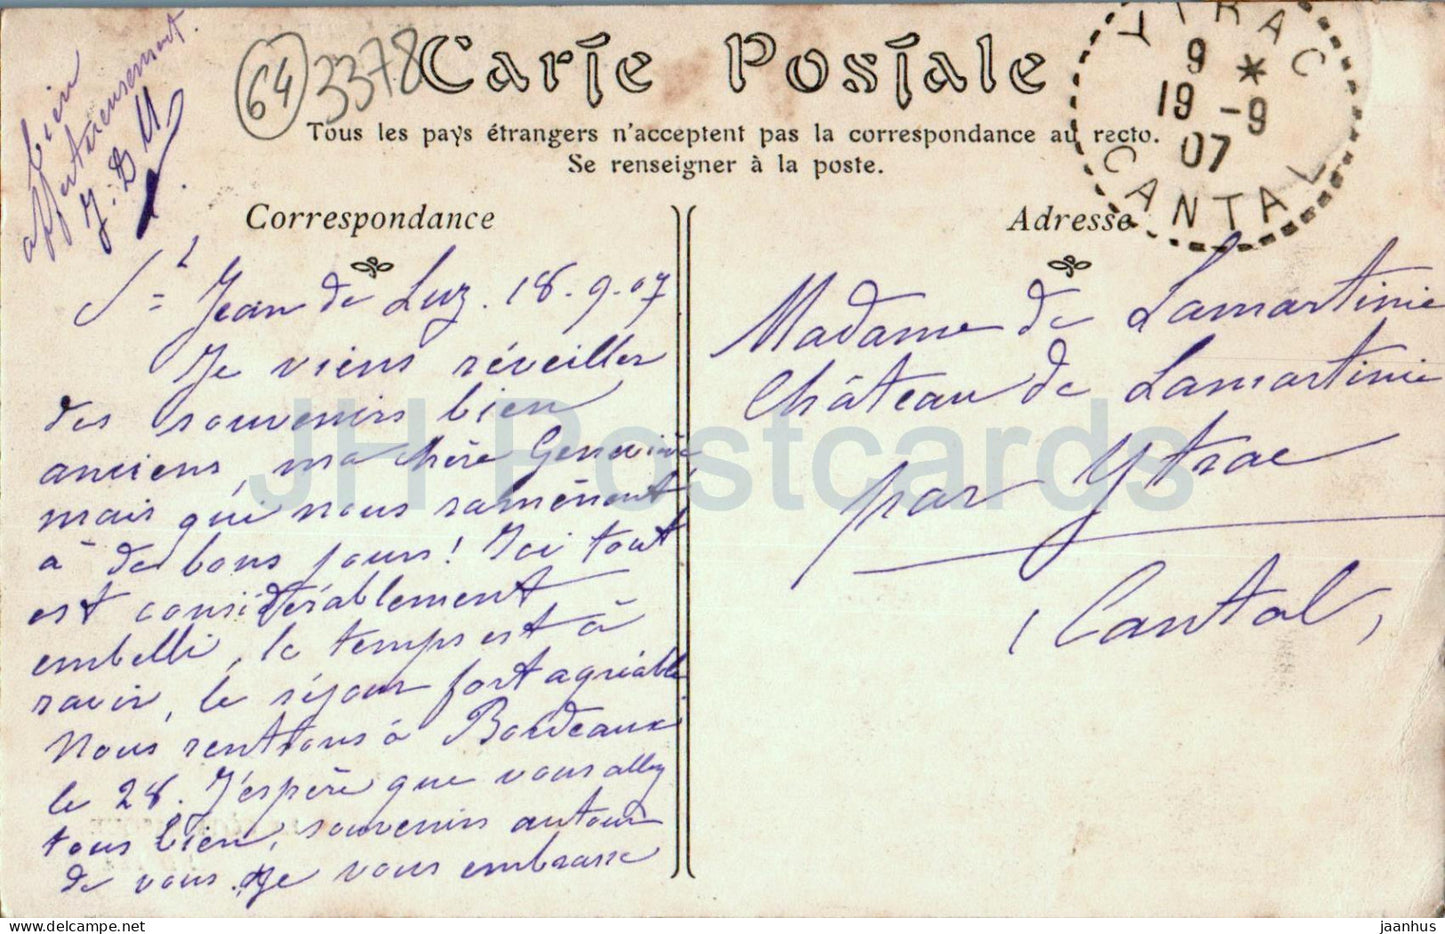 Saint Jean de Luz - Vue generale prise de la Pointe Sainte Barbe - old postcard - 1907 - France - used